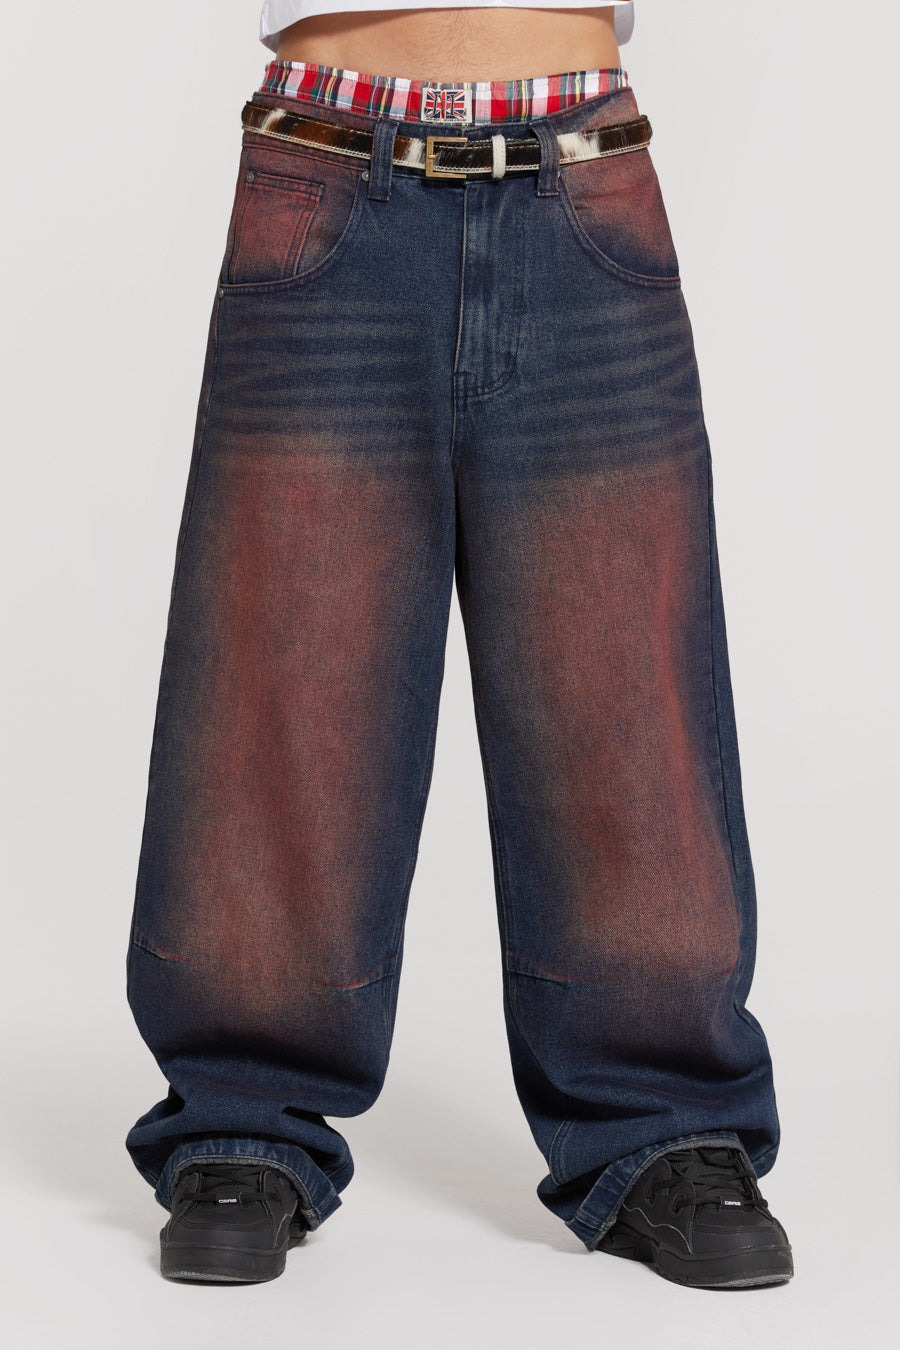 Red Sandblast Colossus Jeans | Jaded London